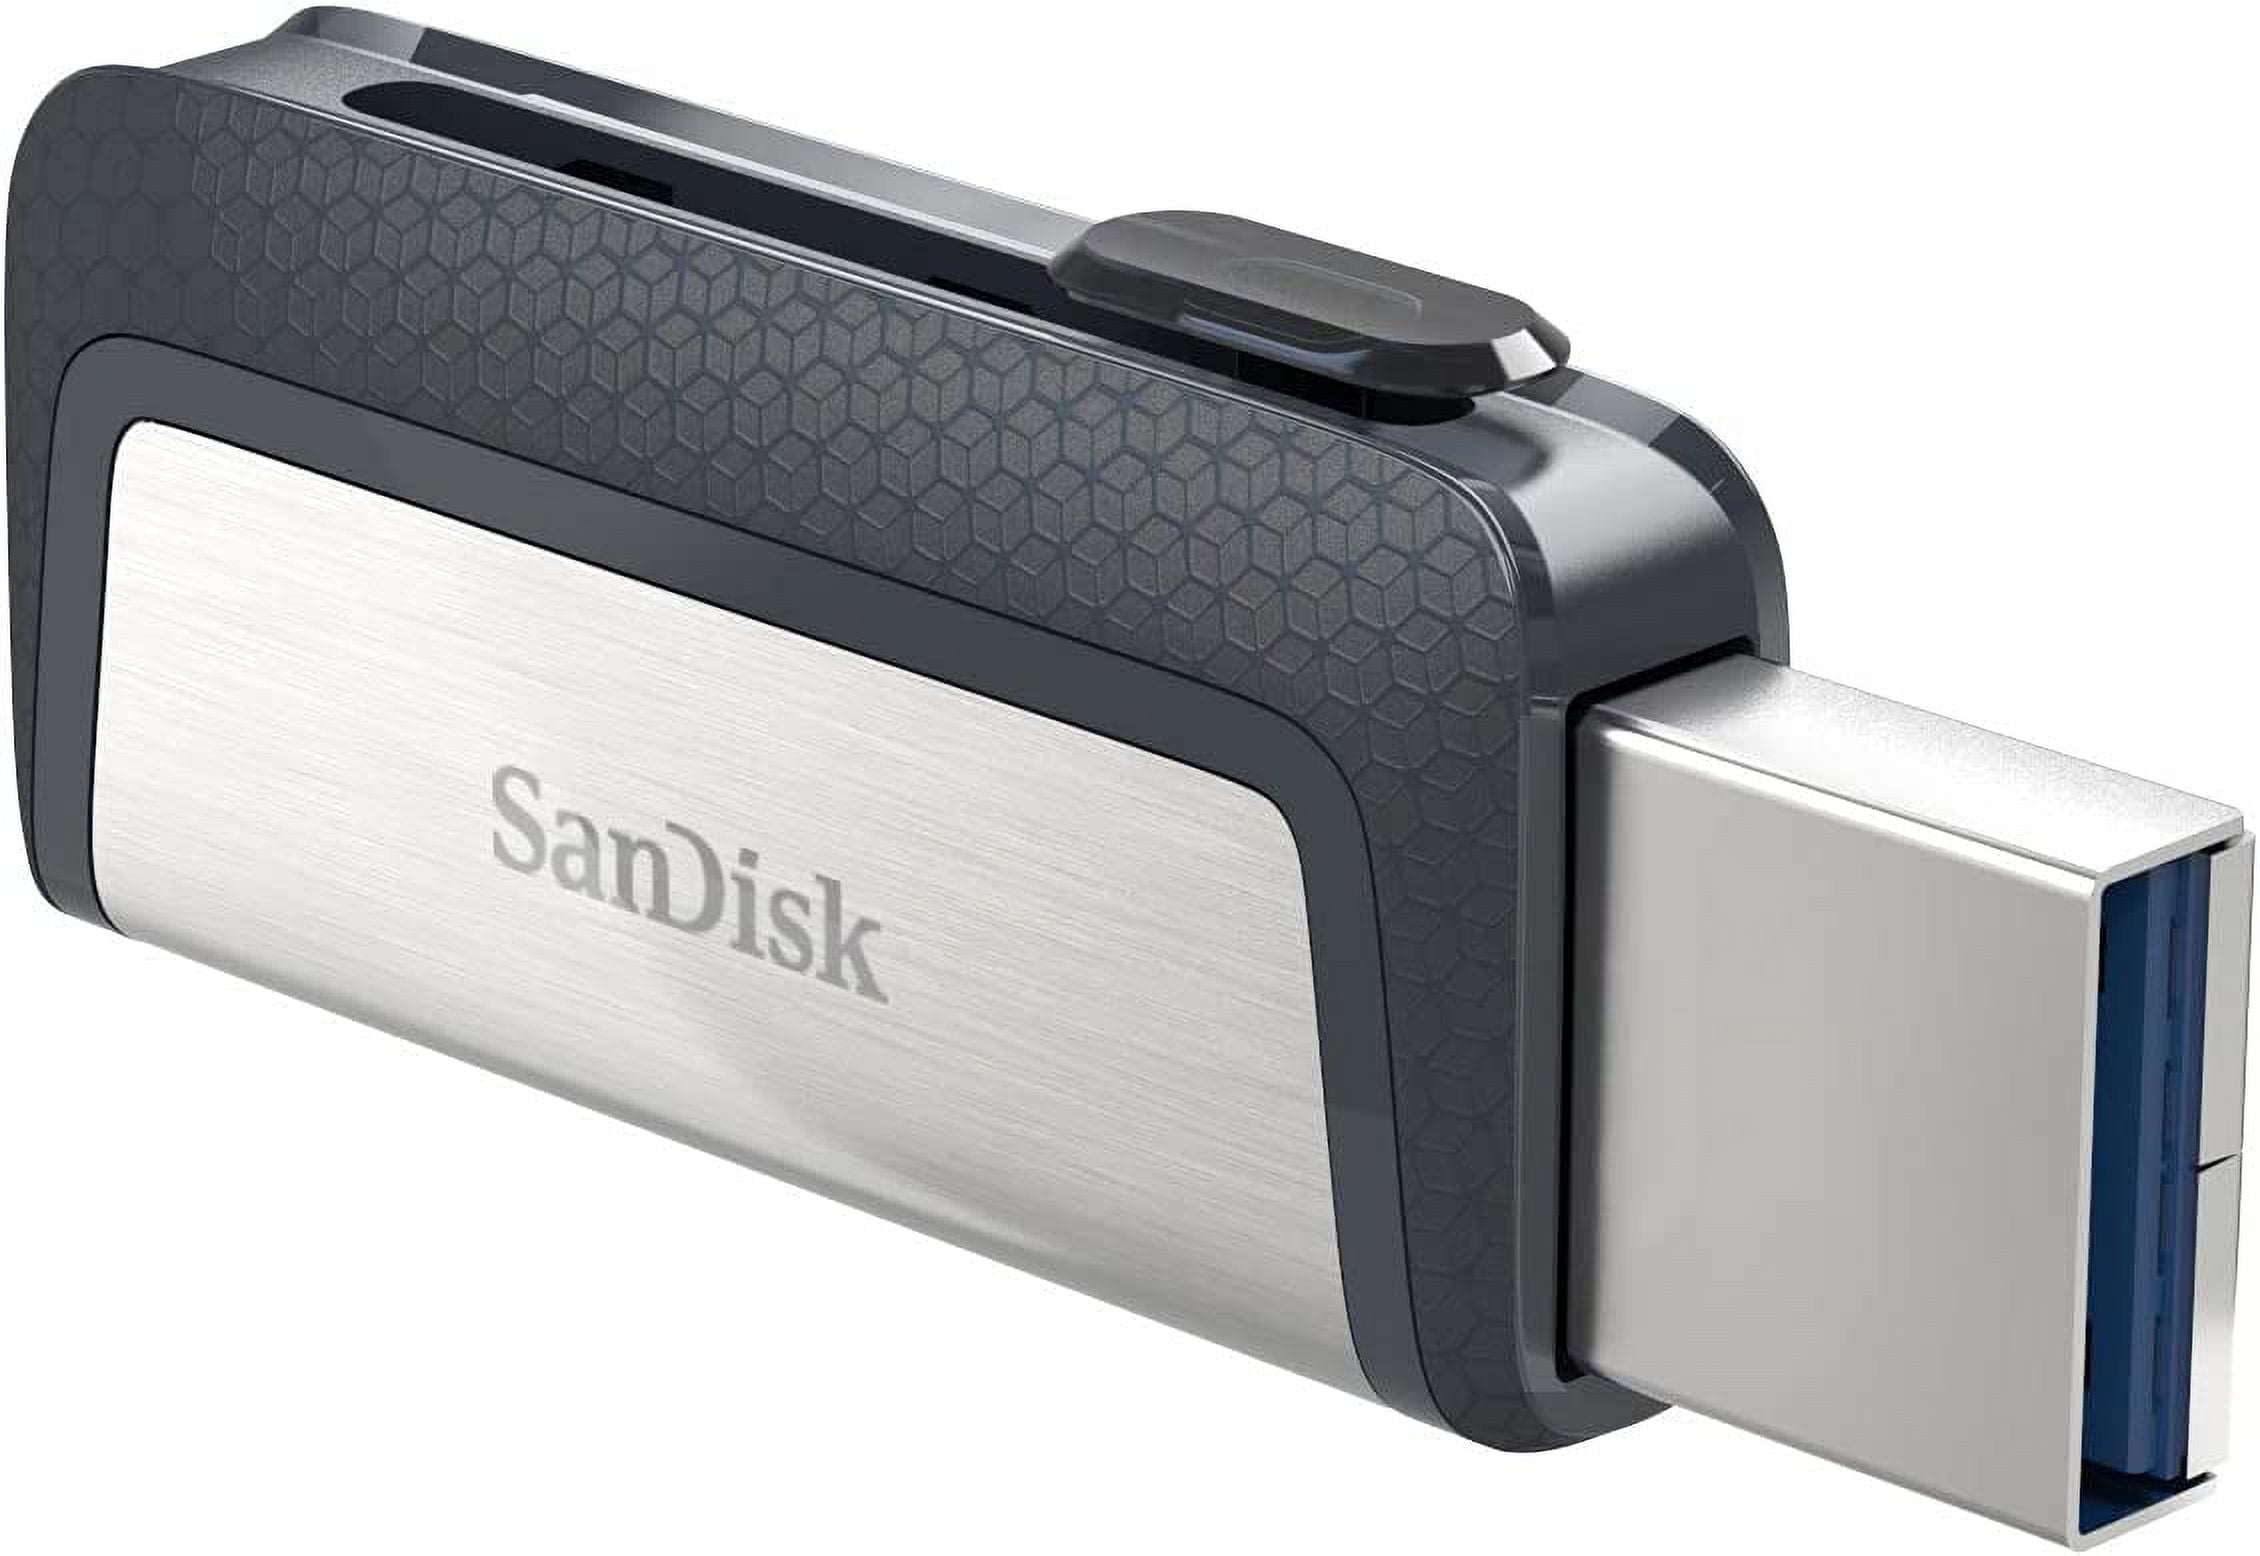 Acheter Clé USB-C 256 Go SanDisk Ultra Luxe (SDDDC4-256G-G46)